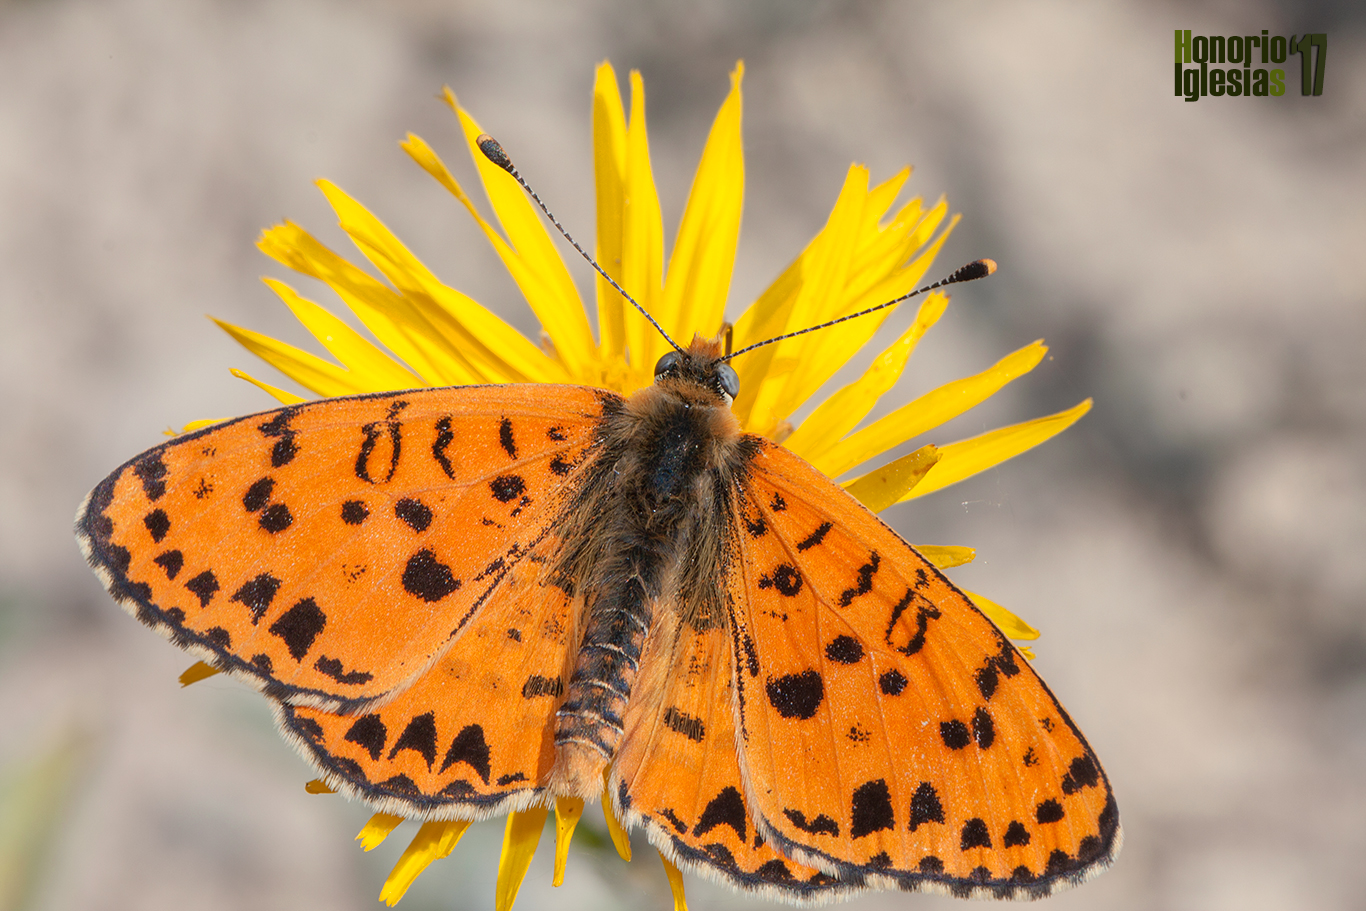 Ejemplar de mariposa doncella didima o doncella tímida (Melitaea didyma) mostrando su anverso alar